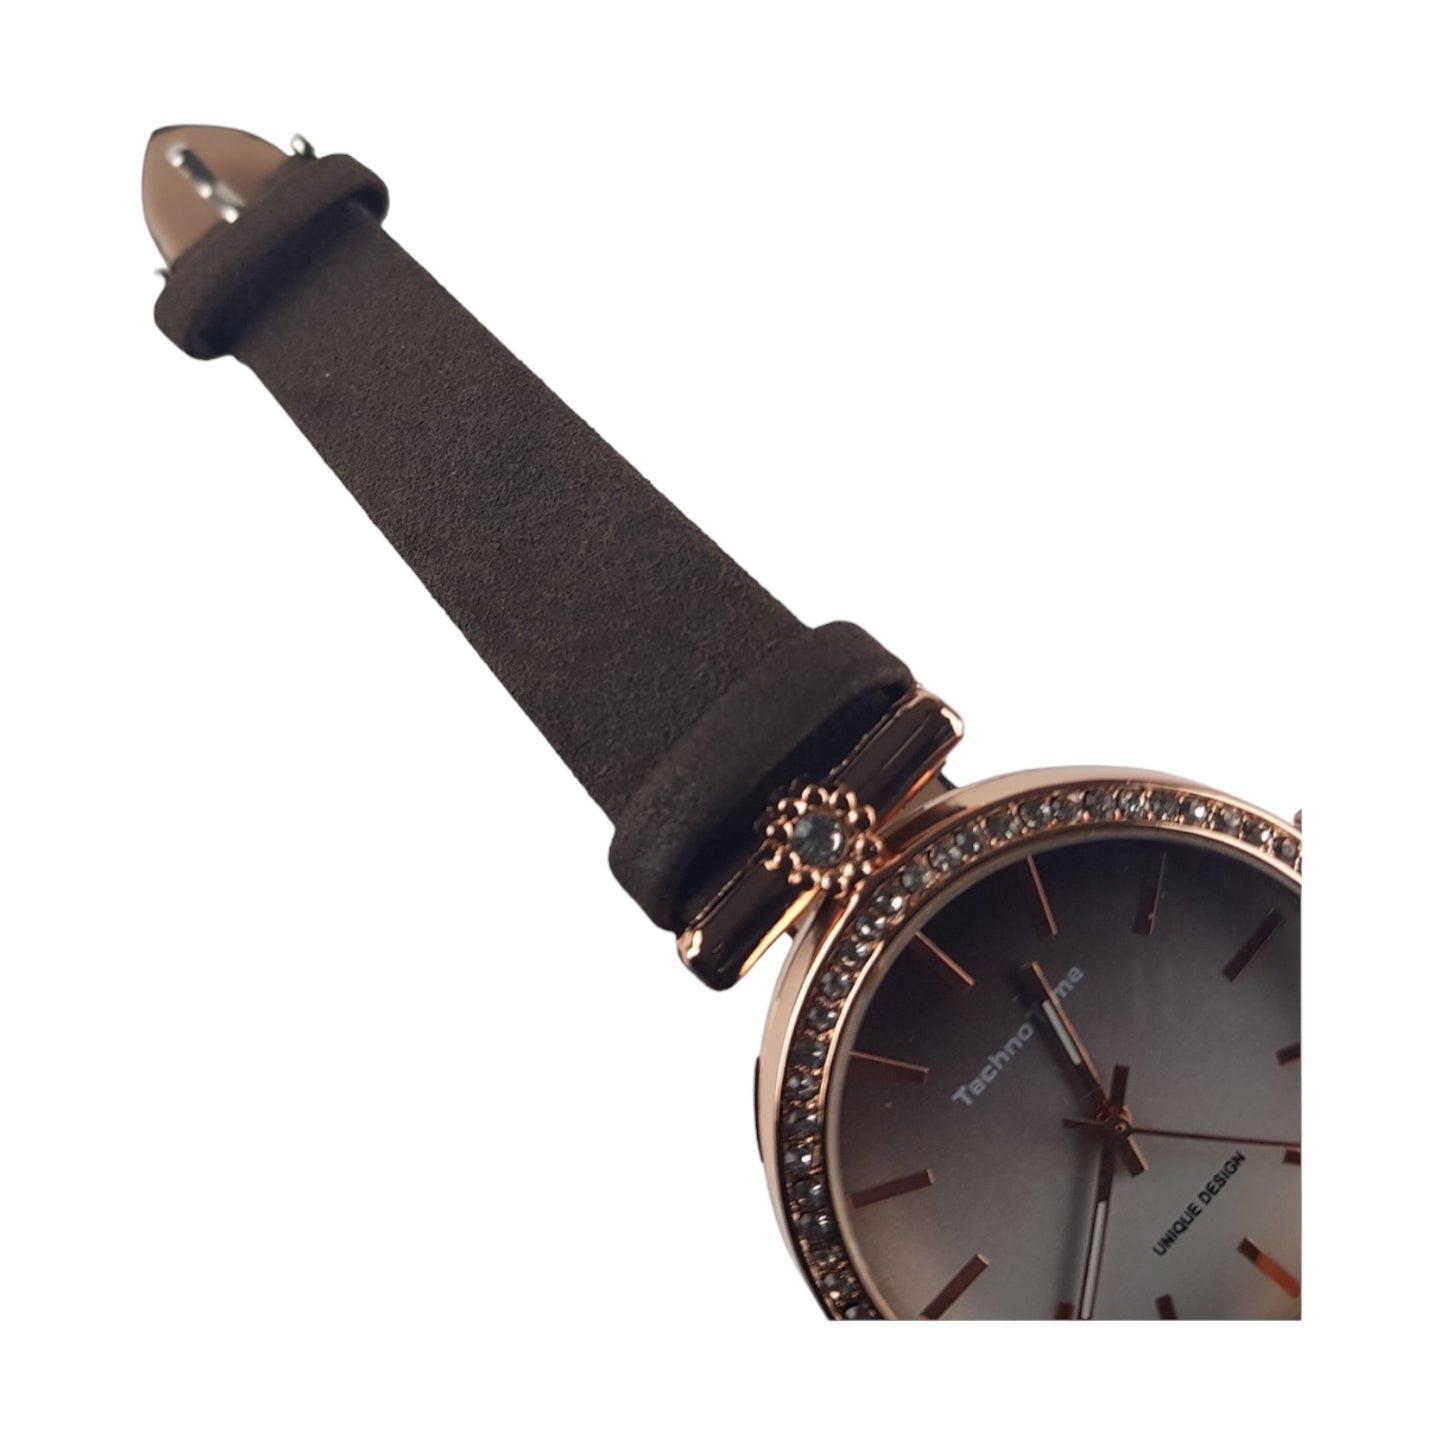 Relógio Design Castanho Mulher | Acexarme. Mais modelos Relógios Mulher disponíveis.